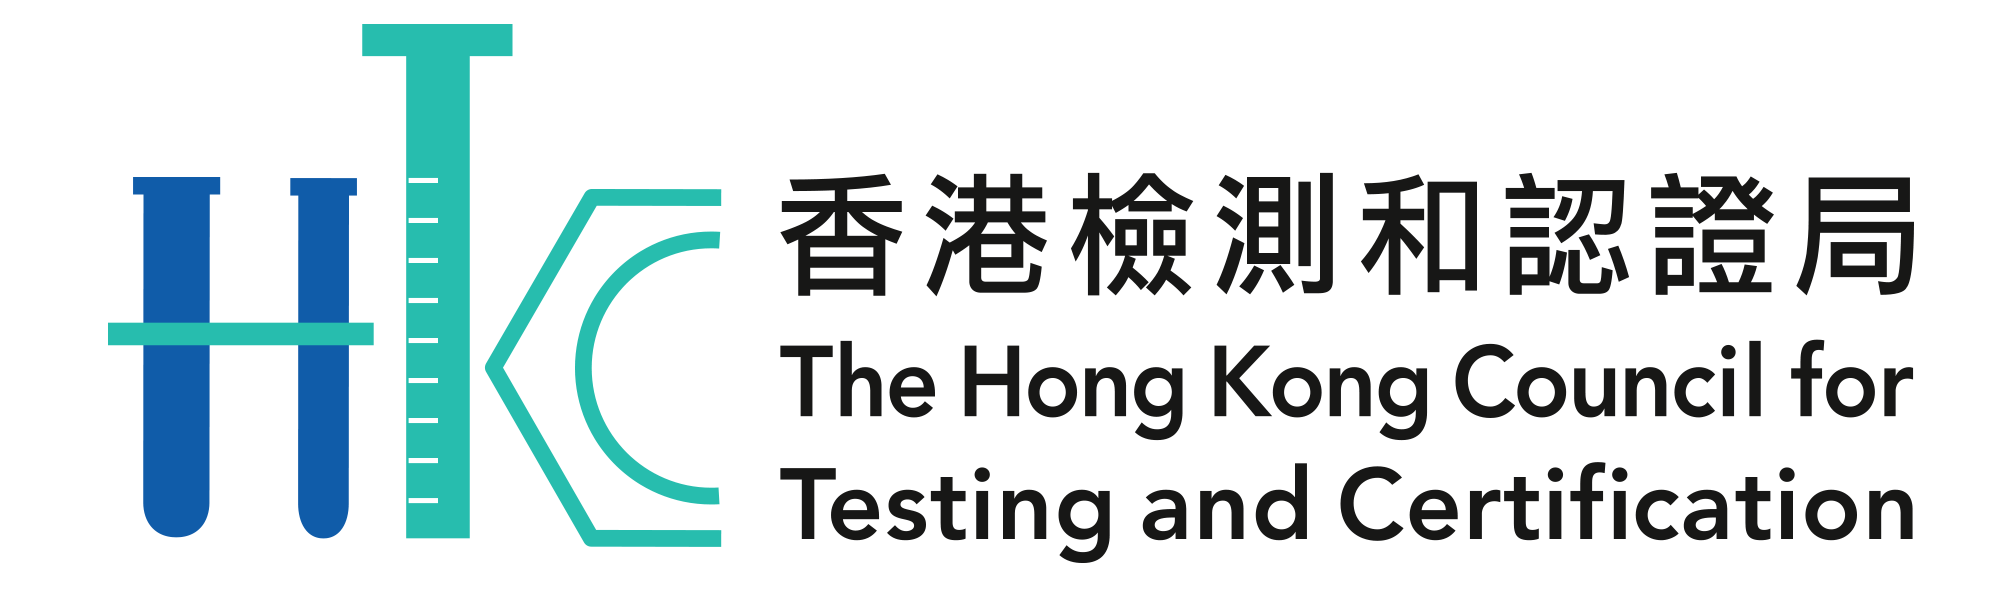 HKCTC Logo Final 2012 1005 clean 002